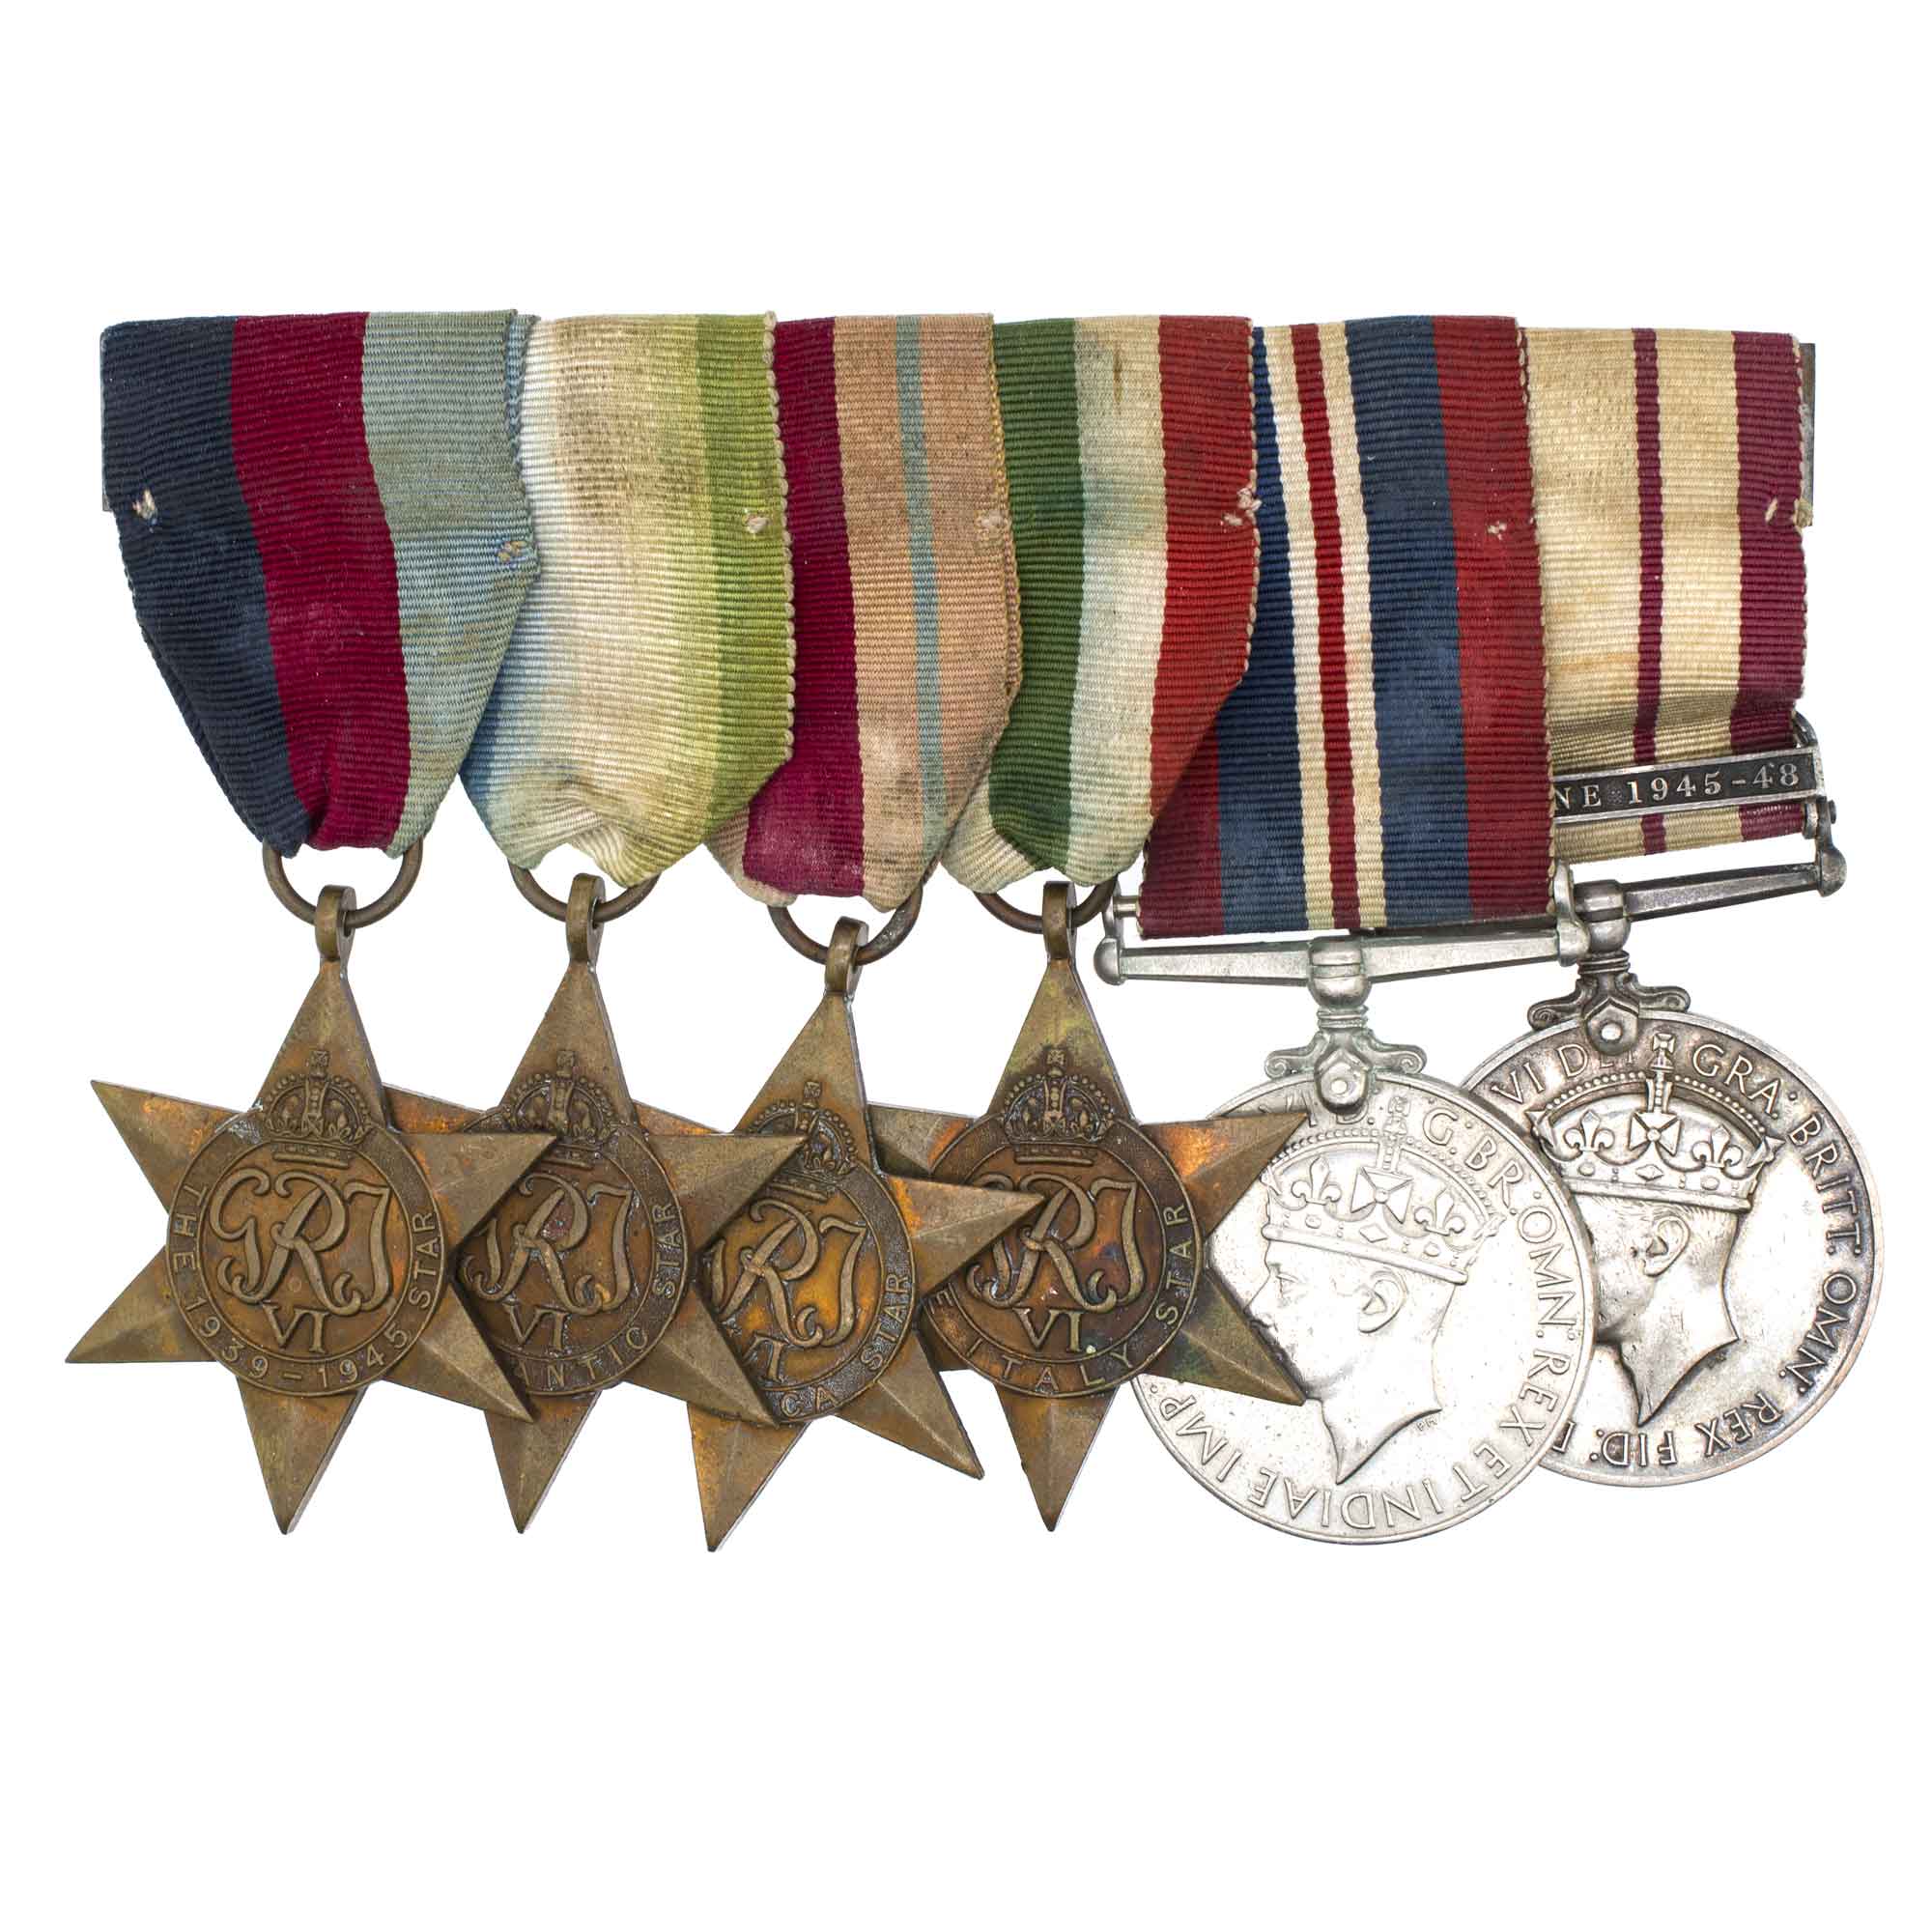 Великобритания. Наградная колодка из 6 медалей времен Второй мировой войны.